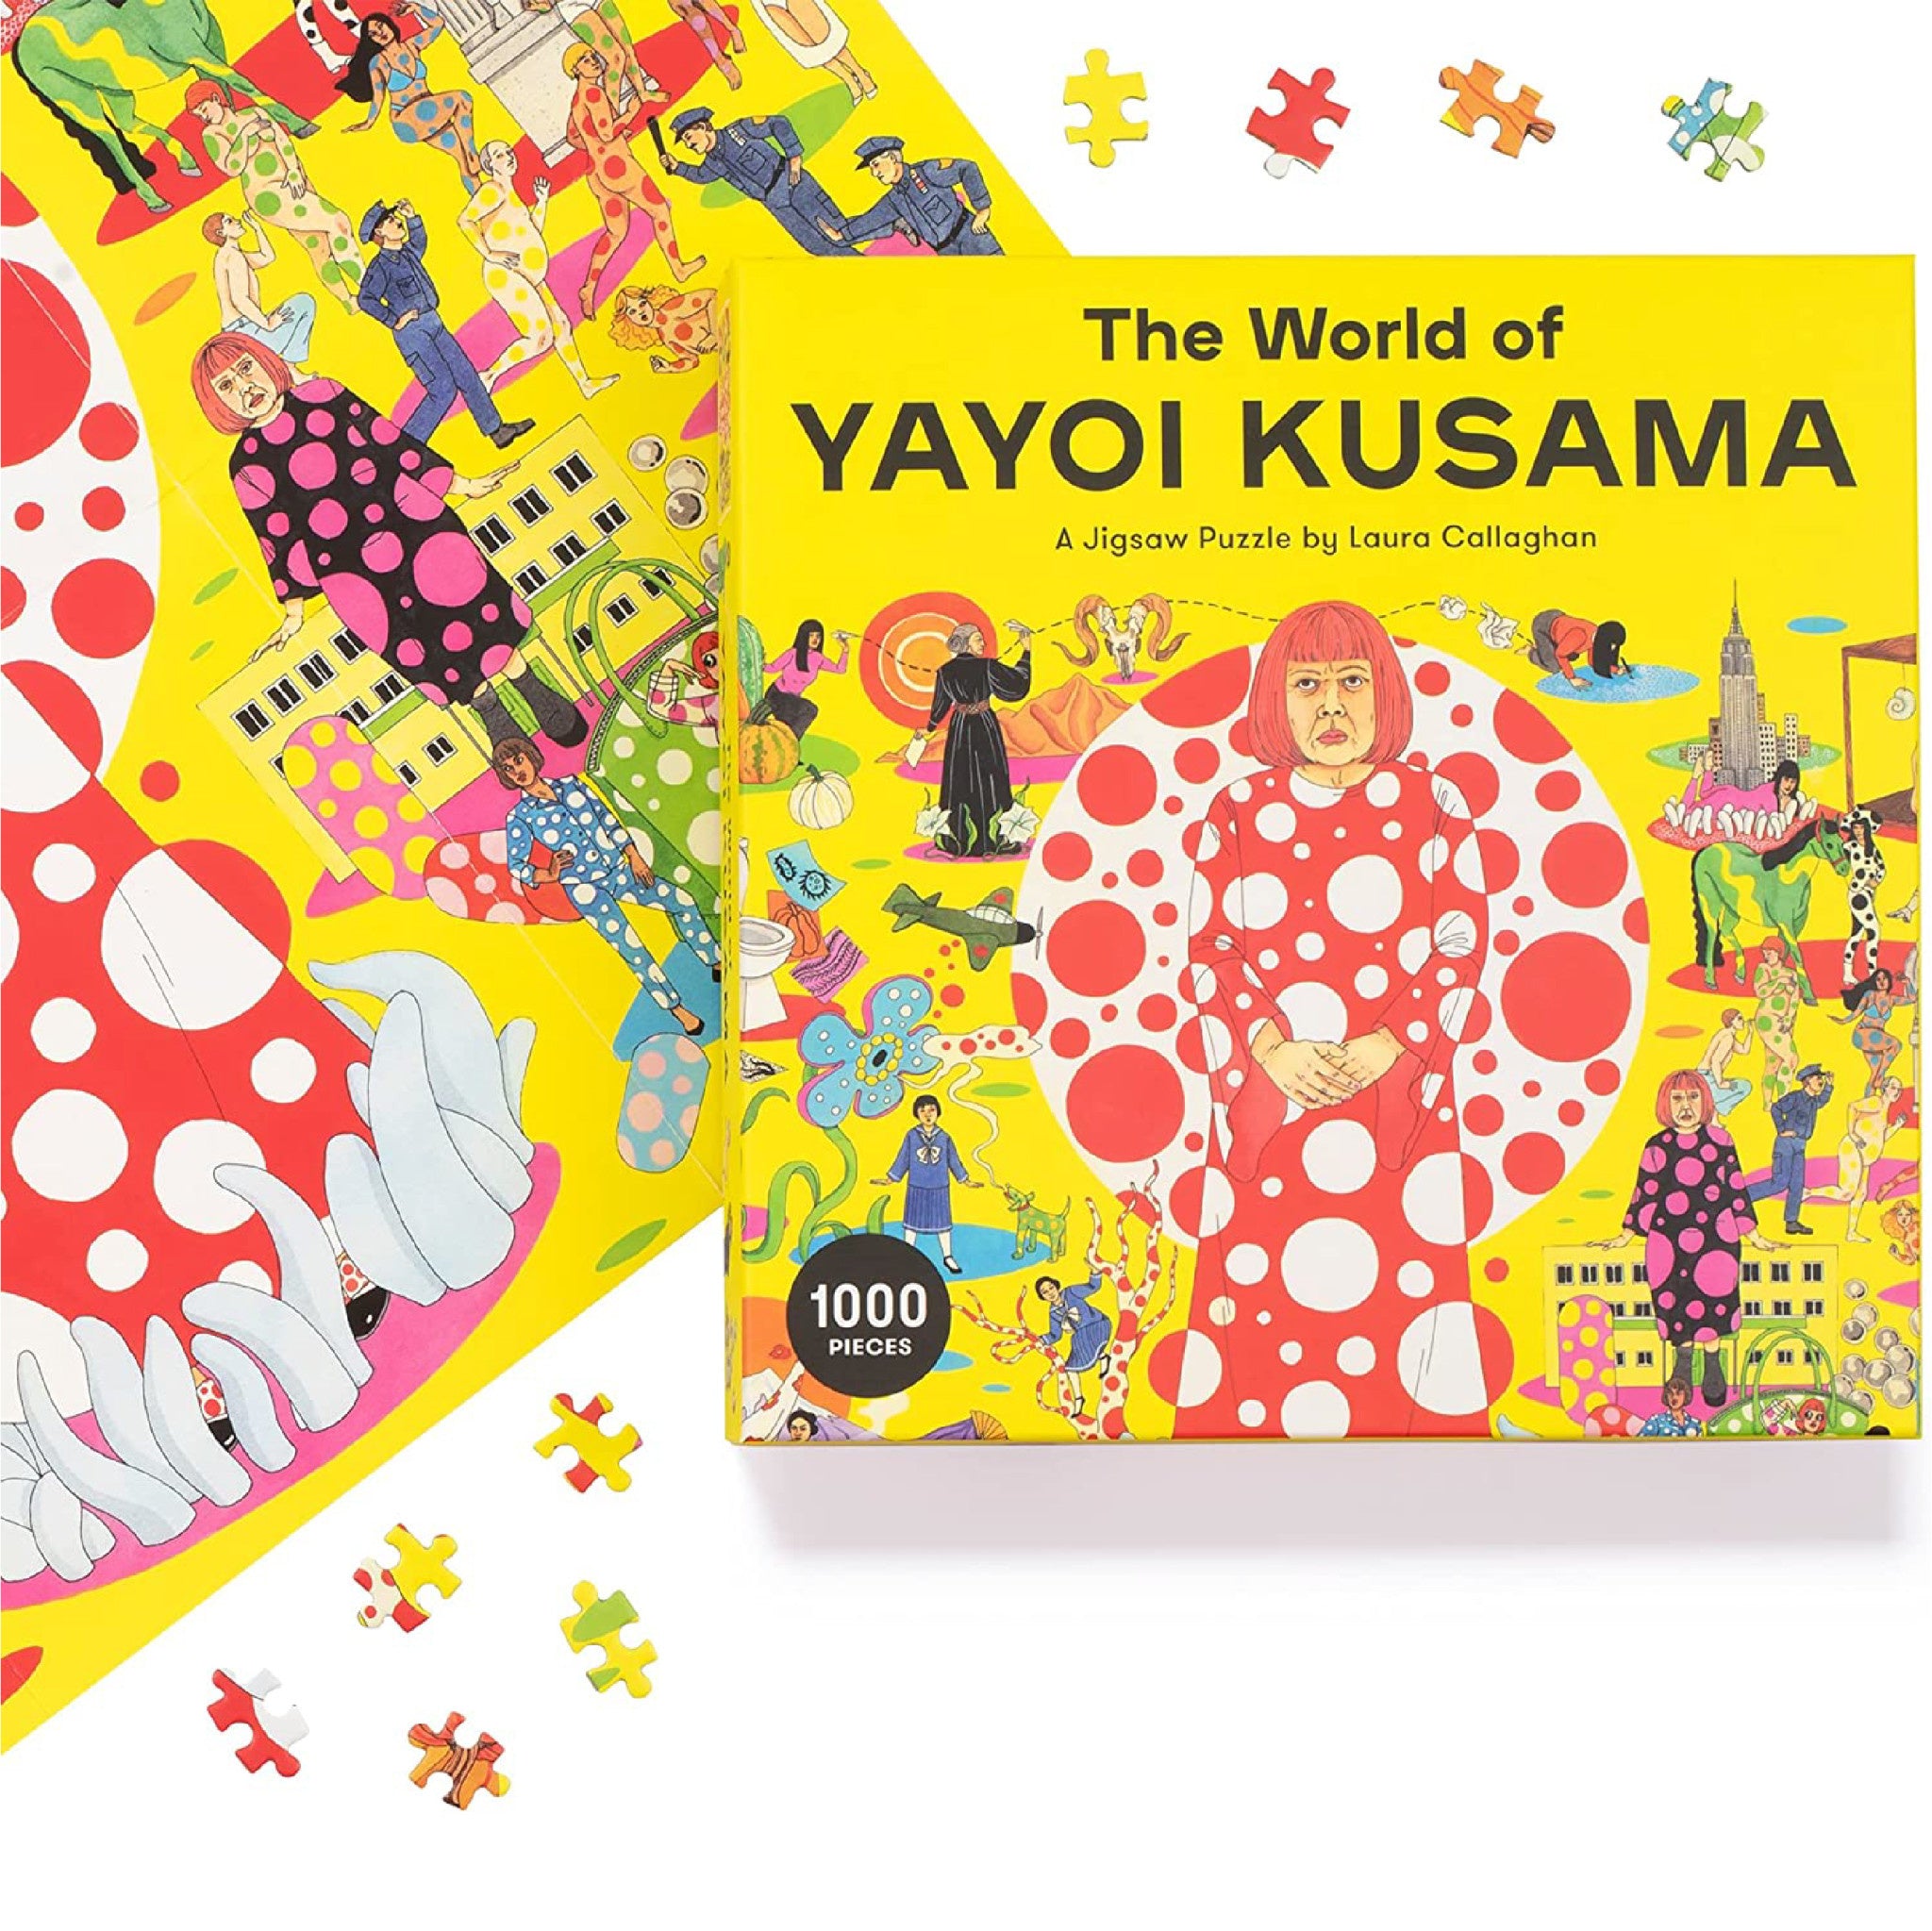 The World of Yayoi Kusama 1000 Piece Puzzle - Wynwood Walls Shop